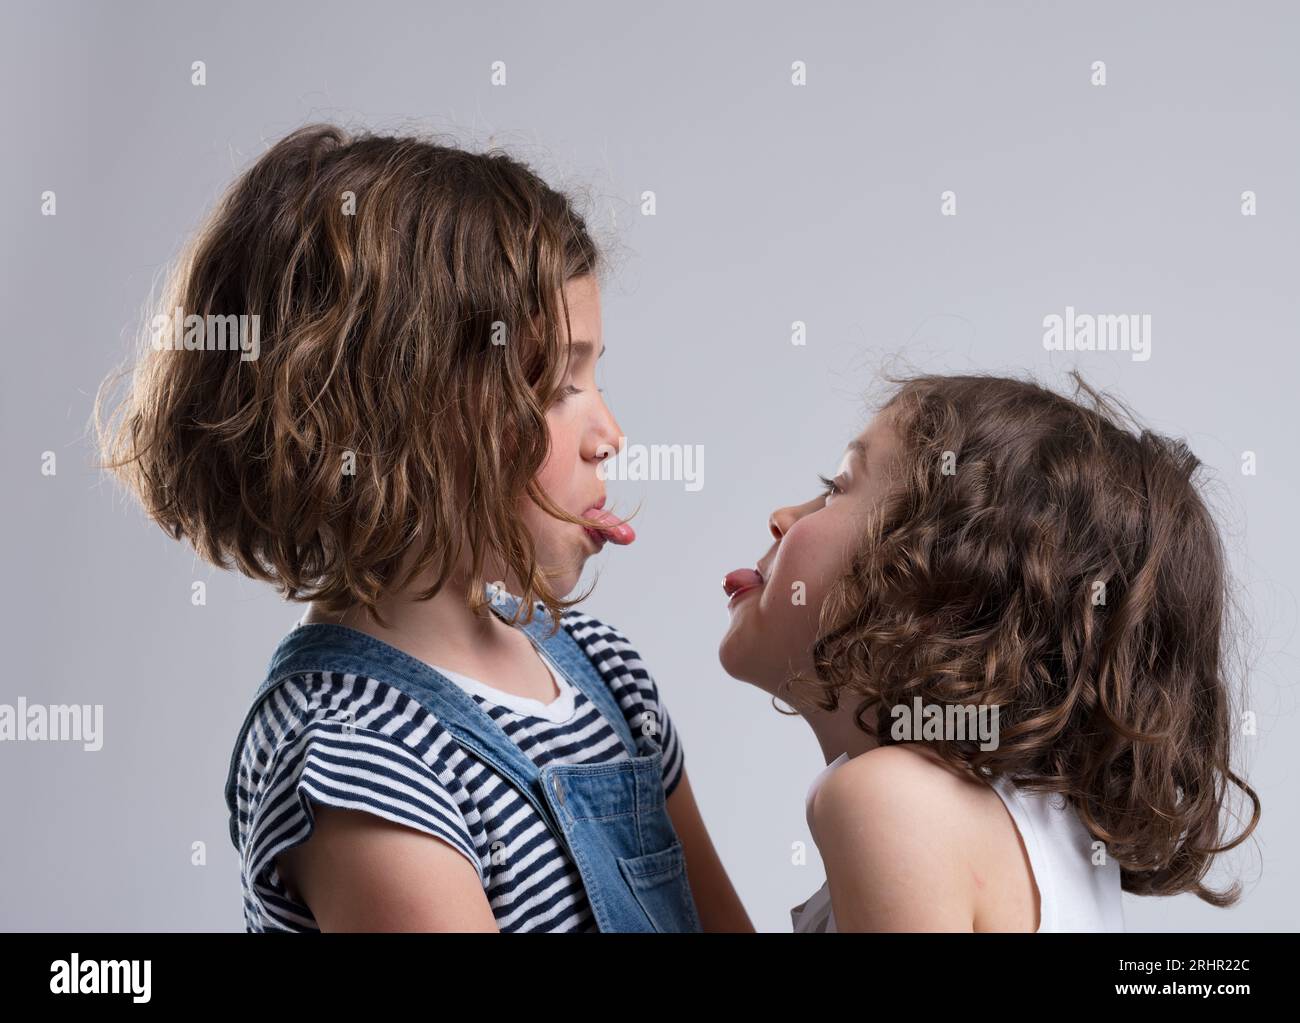 Due ragazze, di 5-7 anni, si stancano sempre di più dalla lingua. Probabilmente amici o sorelle, si affrontano facendo facce, vestiti casualmente. Loro lau Foto Stock